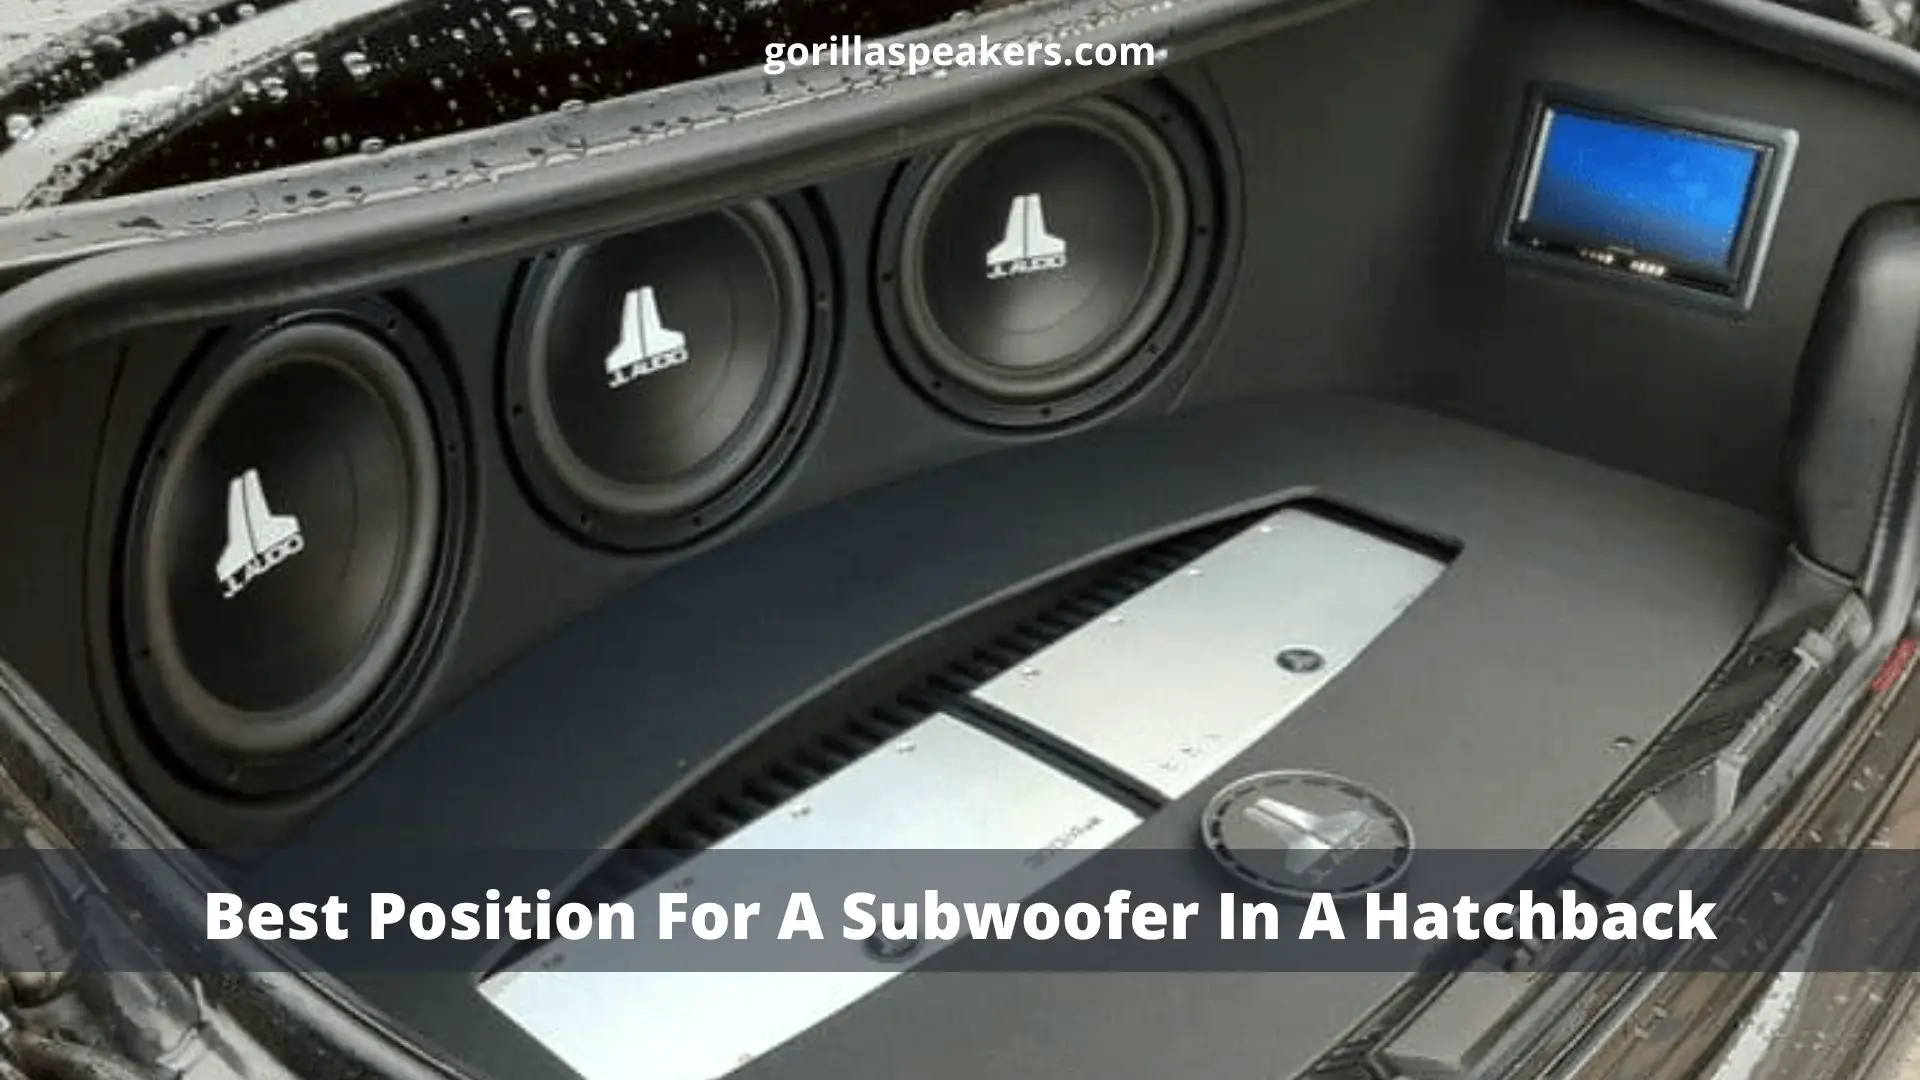 Best Position For A Subwoofer In A Hatchback